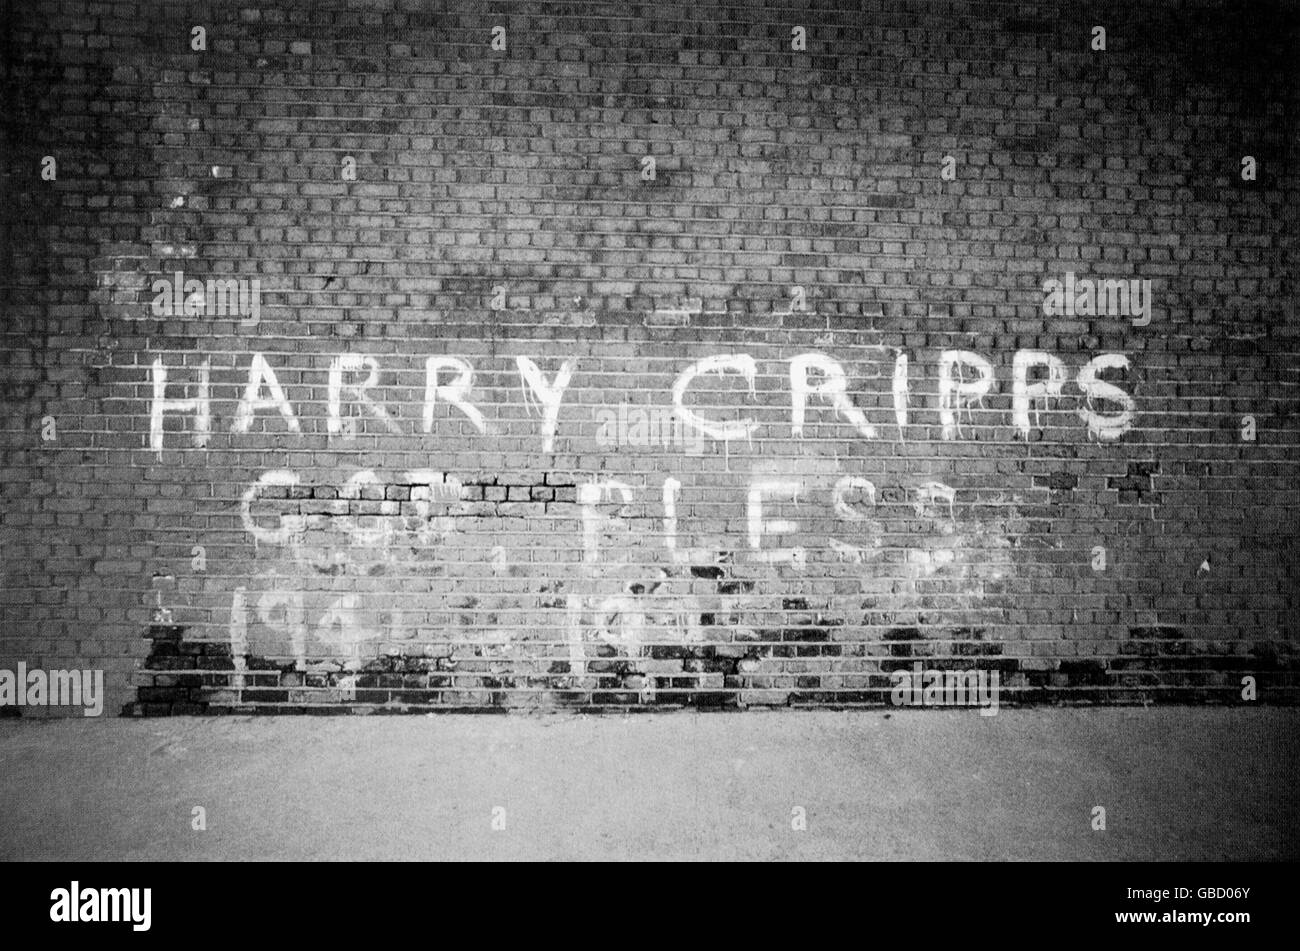 Fútbol. Un graffito que conmemora al ex capitán de Millwall Harry Cripps, quien murió de un ataque al corazón en 1995 Foto de stock